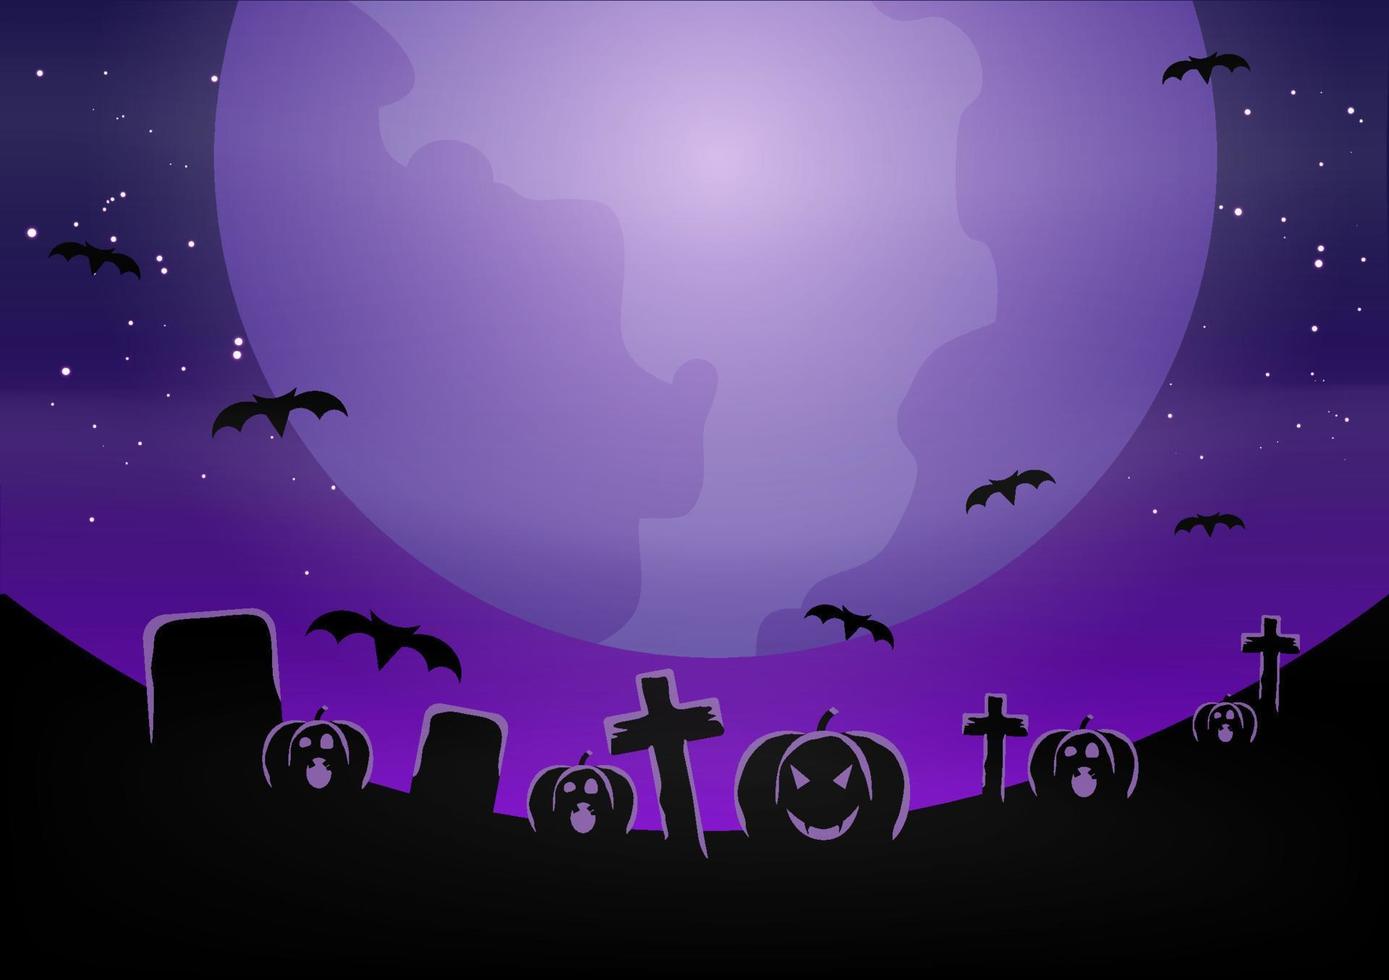 bannière d'halloween avec citrouille. illustration plate de vecteur. nuit de pleine lune dans une forêt fantasmagorique. vecteur